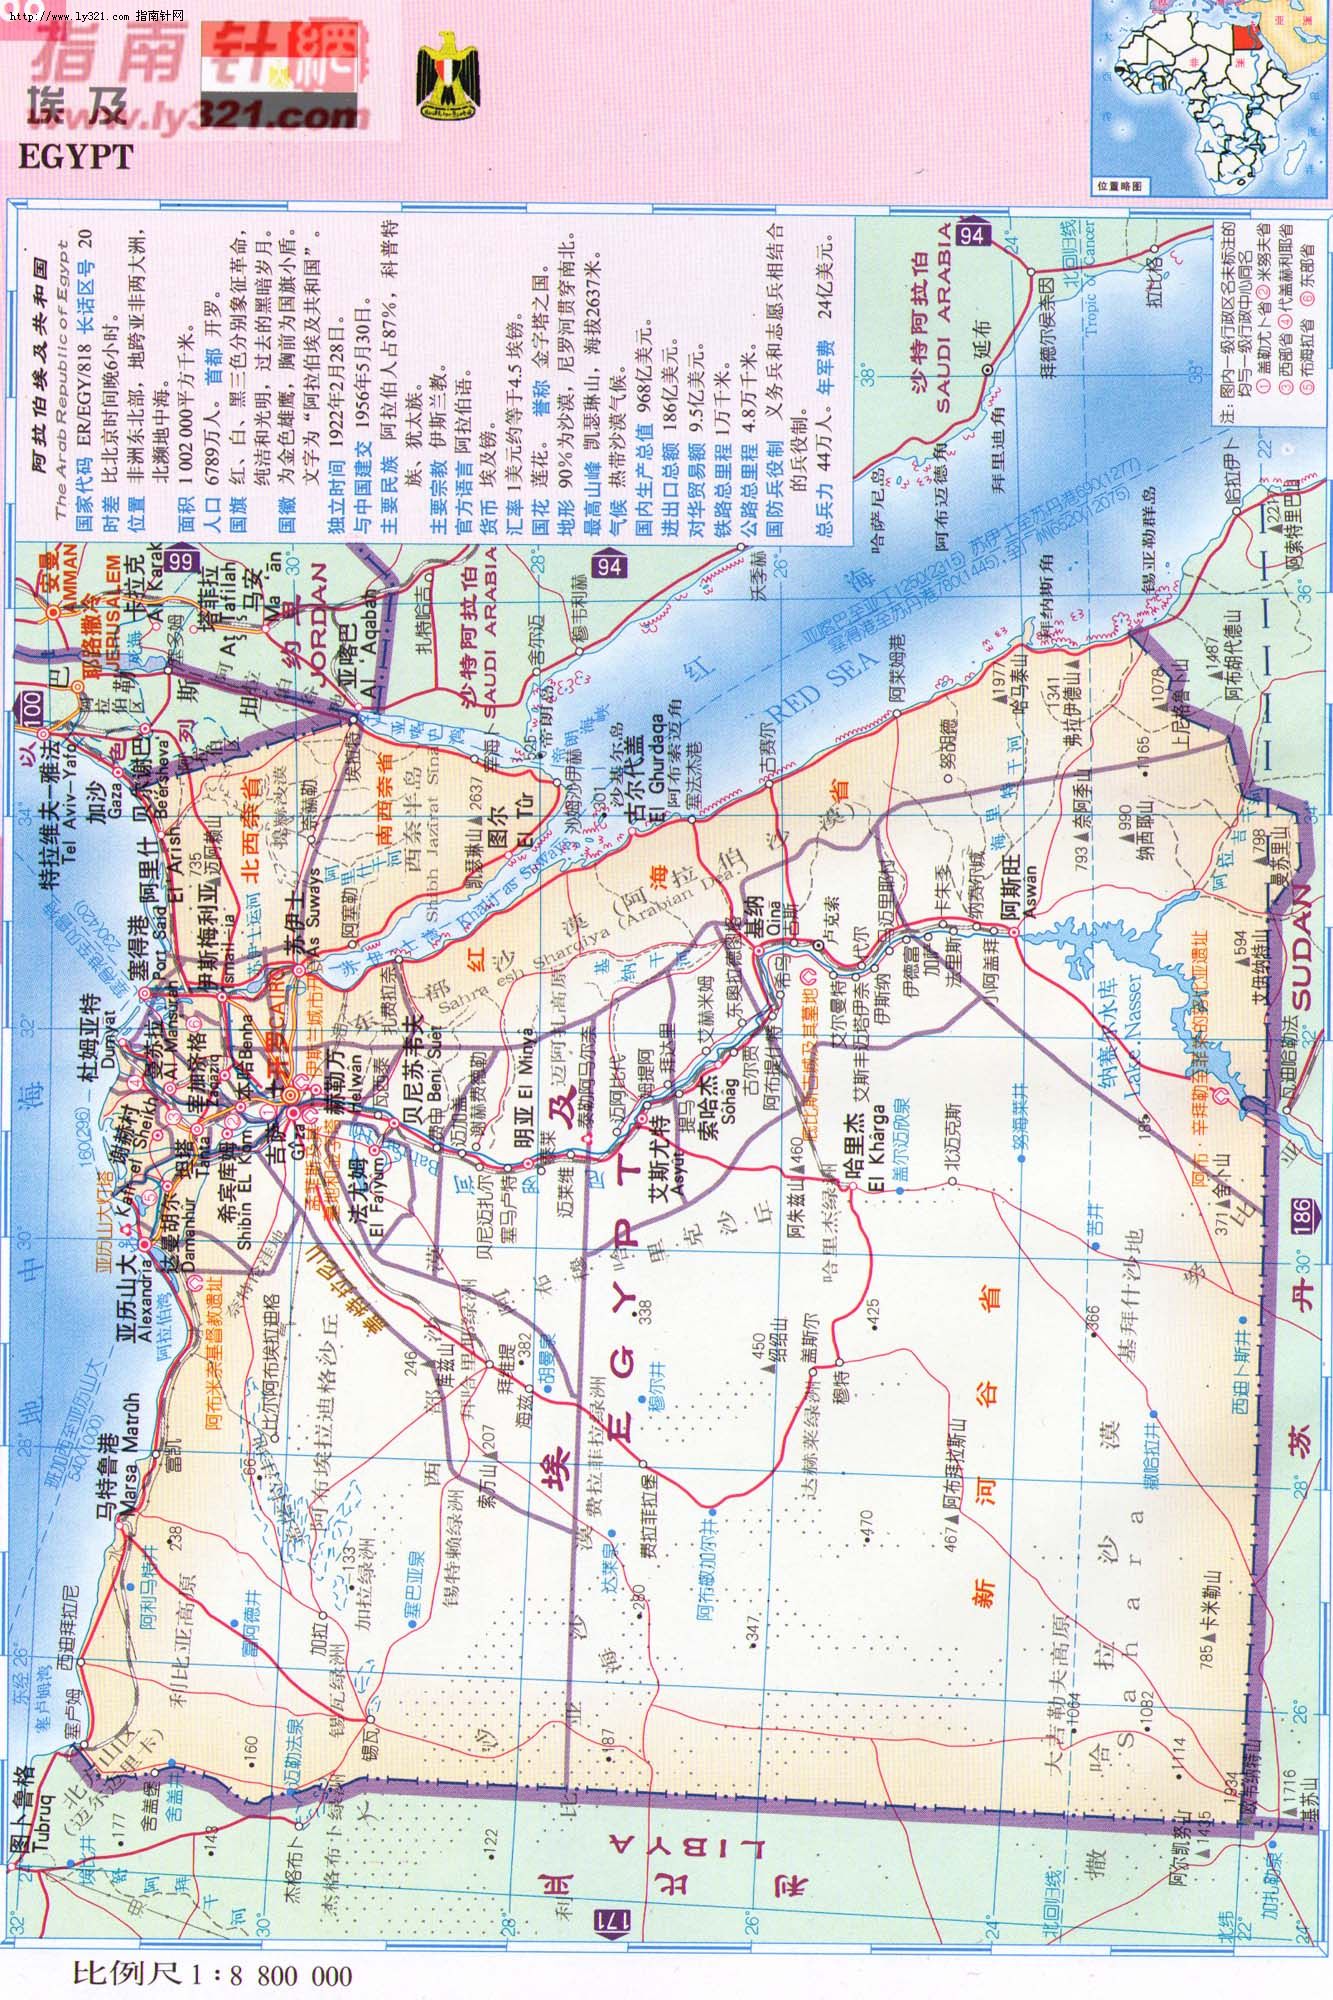 世界地圖-埃及.jpg